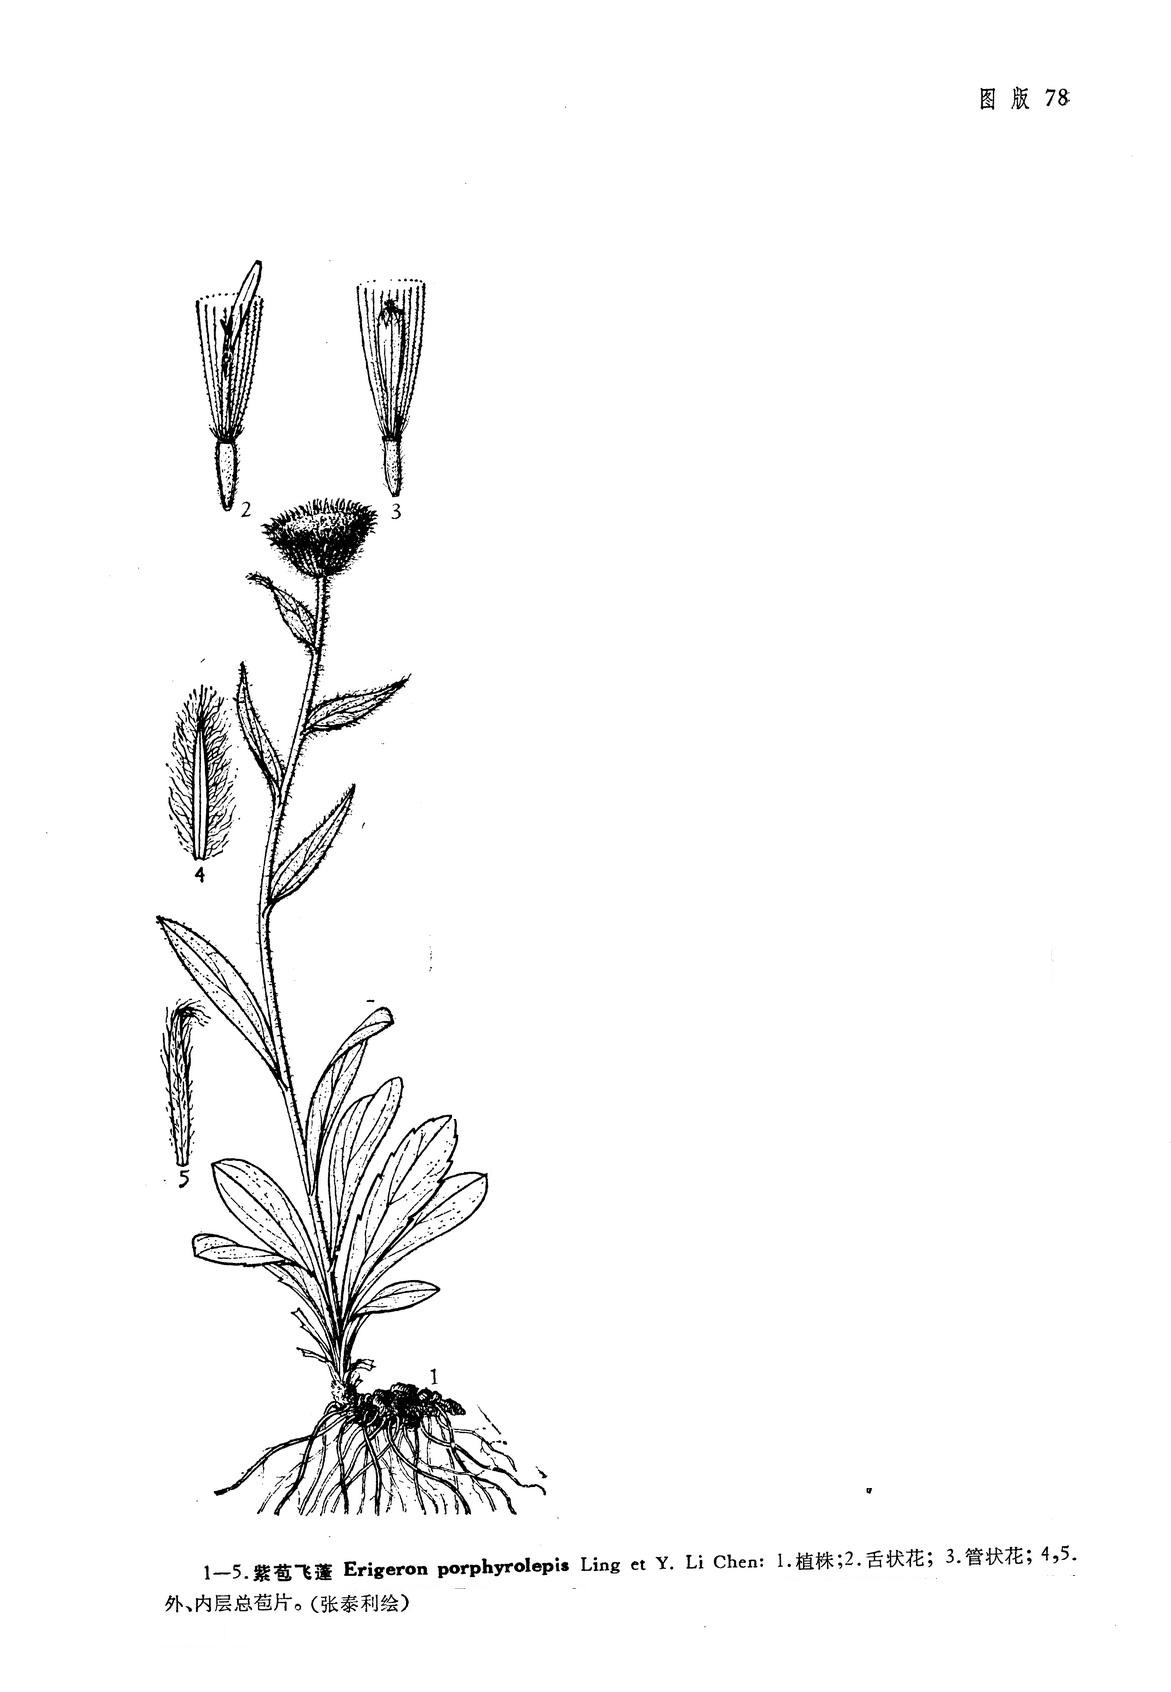 膜苞藁本-神农架植物-图片